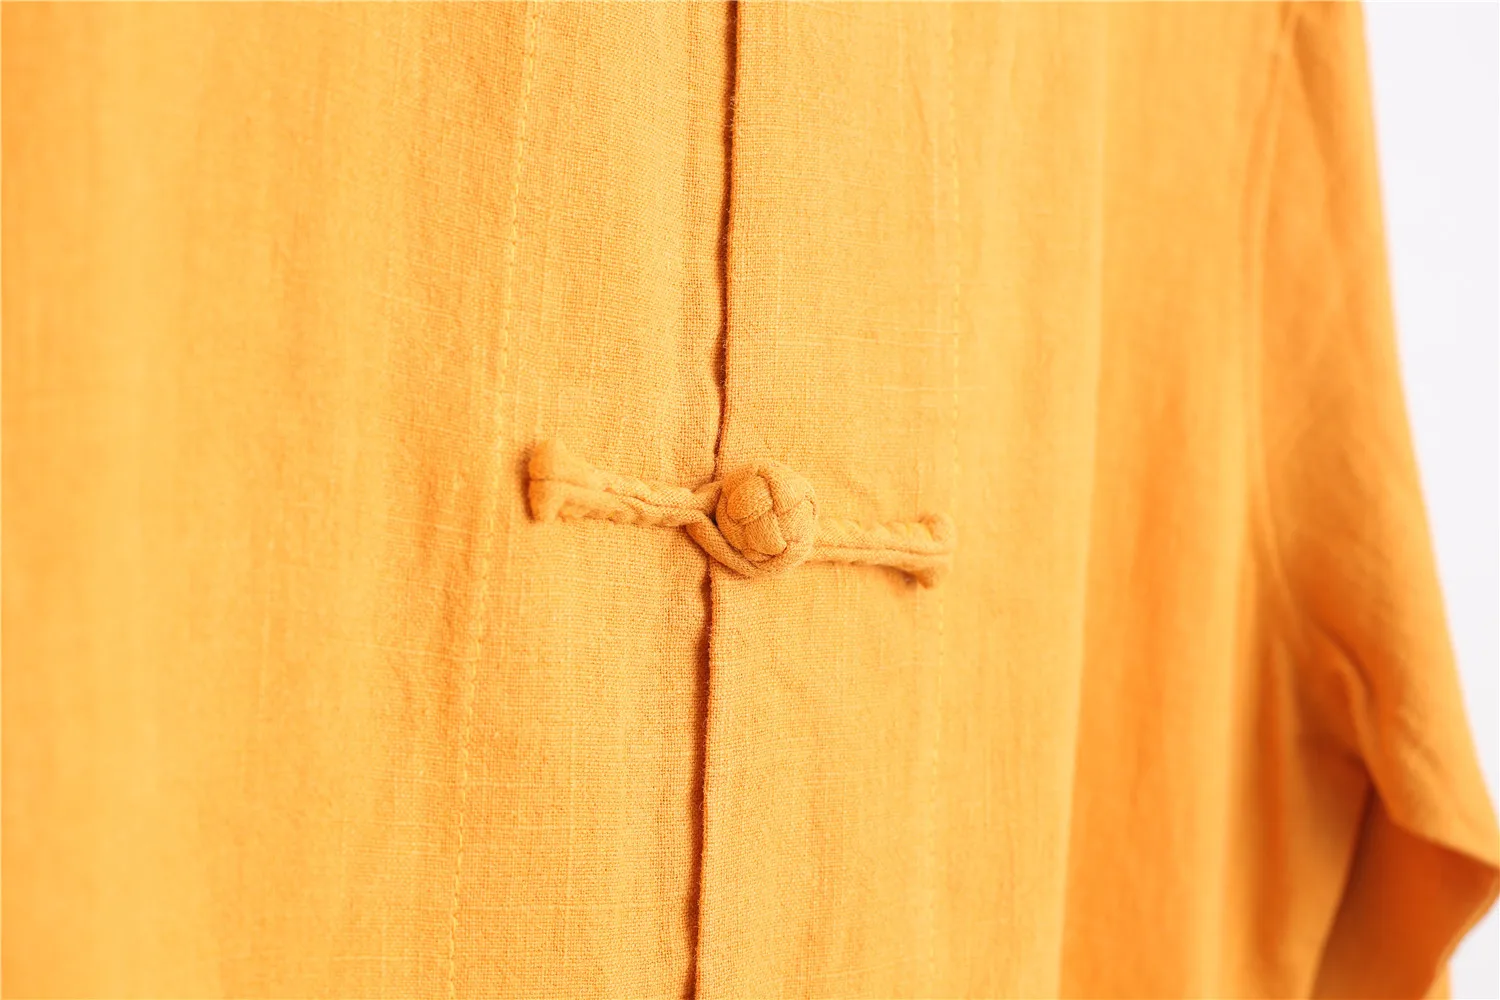 Китайский Стиль льняная Длинная ветровка из мультфильма «Холодное сердце» Чай одежда кардиган пальто свободного кроя майки больших Размеры женское платье D959